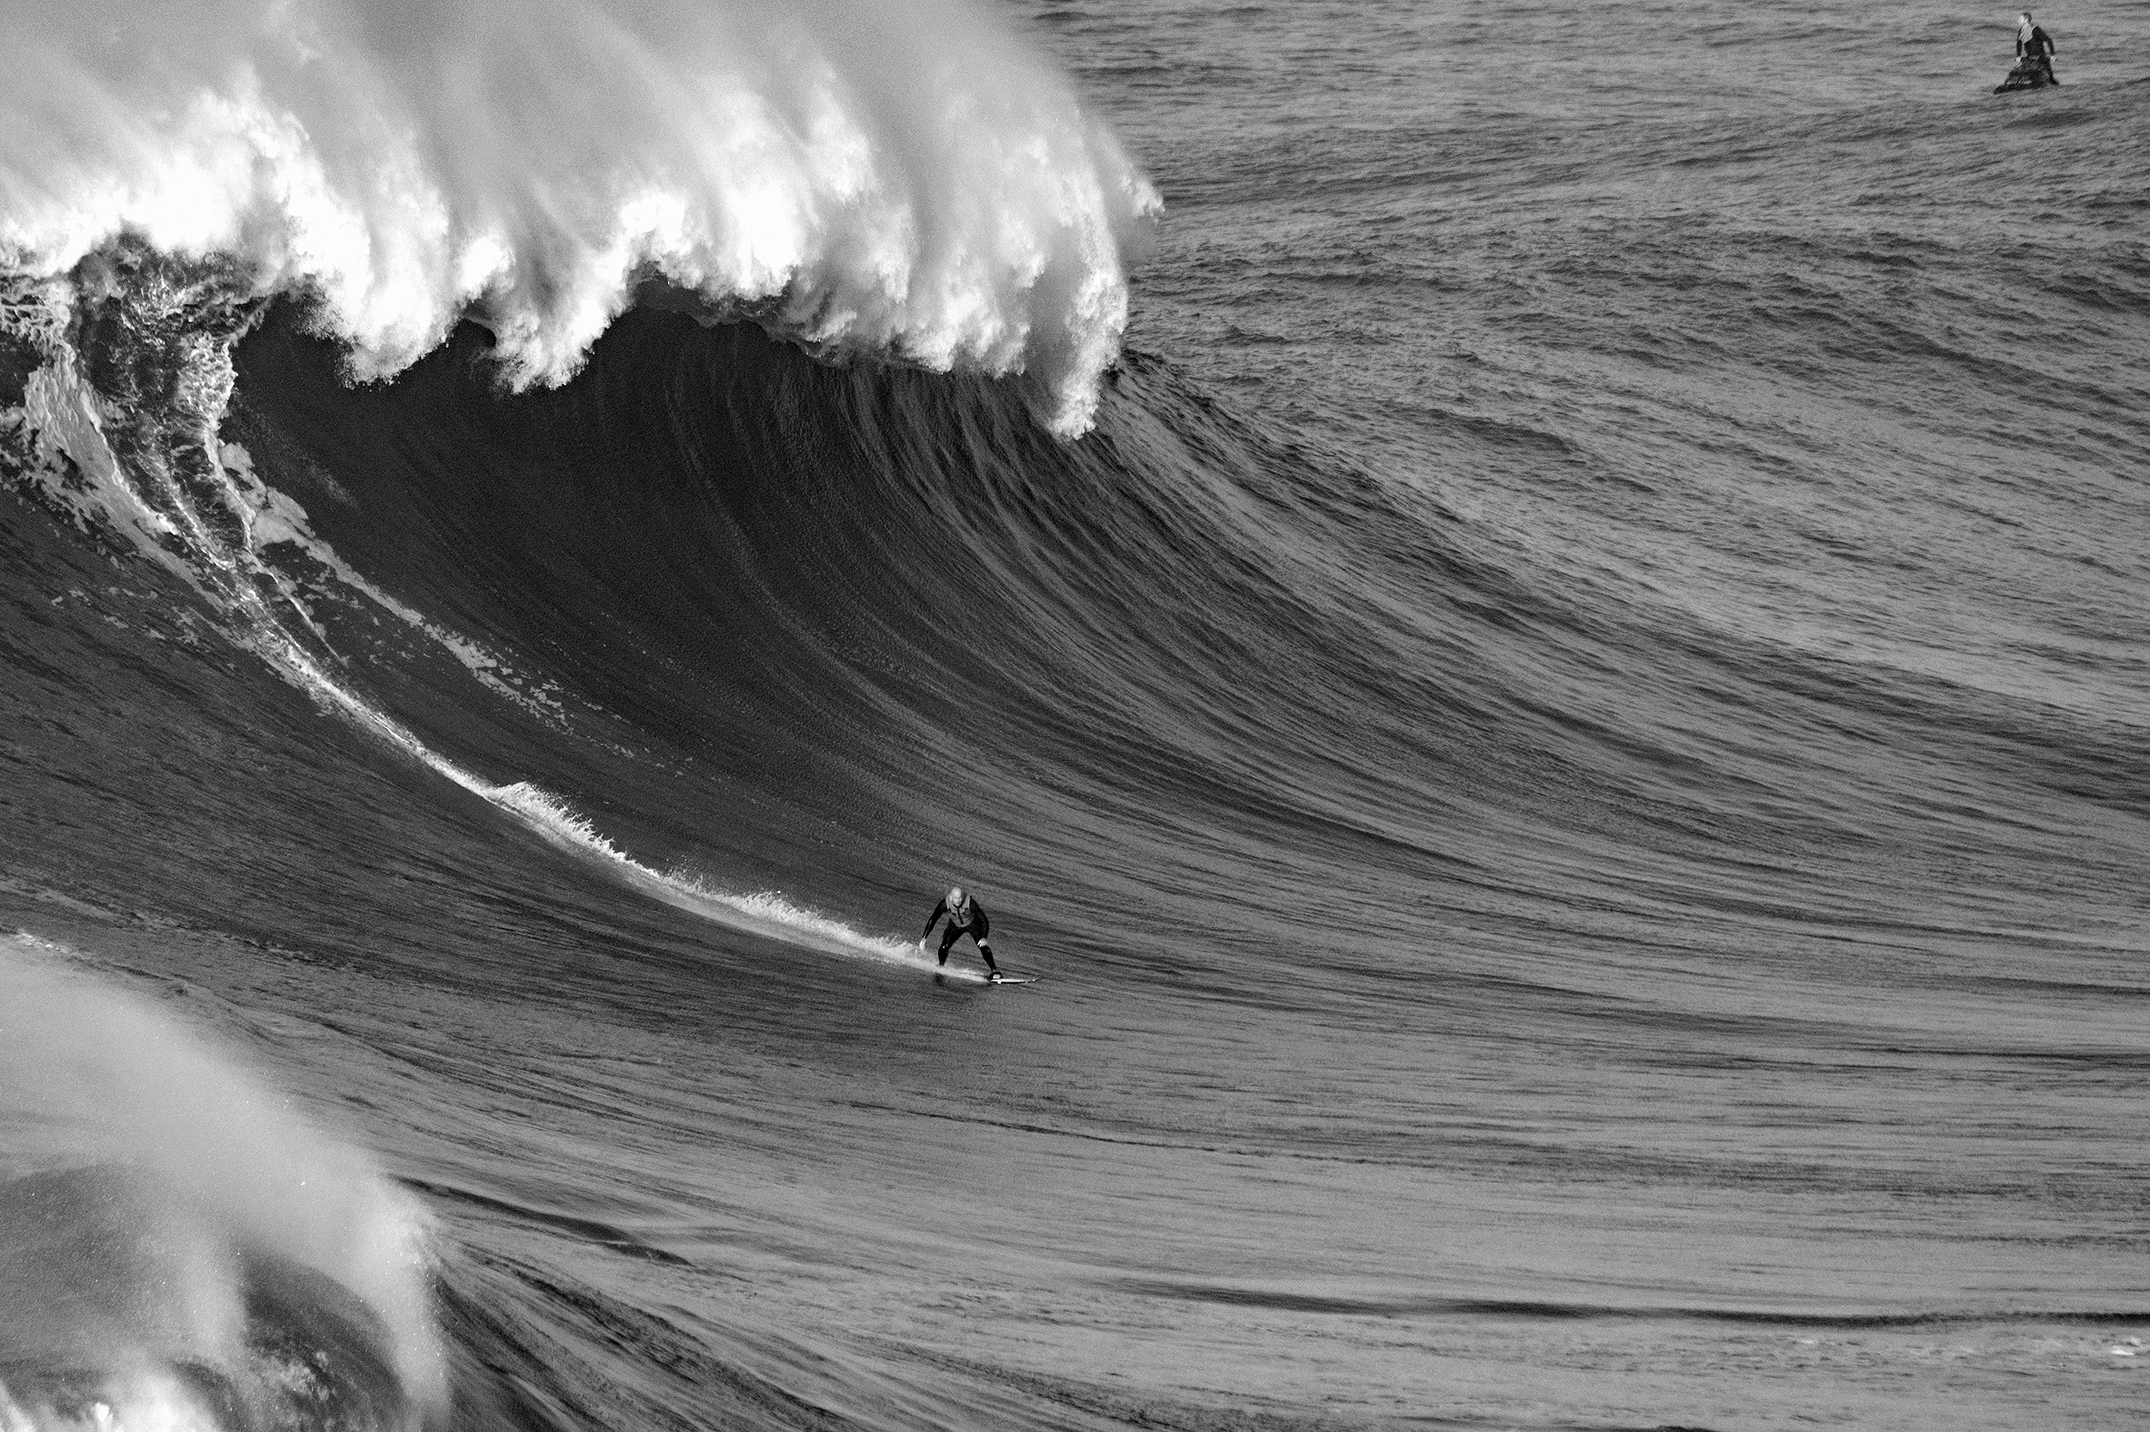 Dark Places: Blind Surfer Matt Formston Feels the Danger